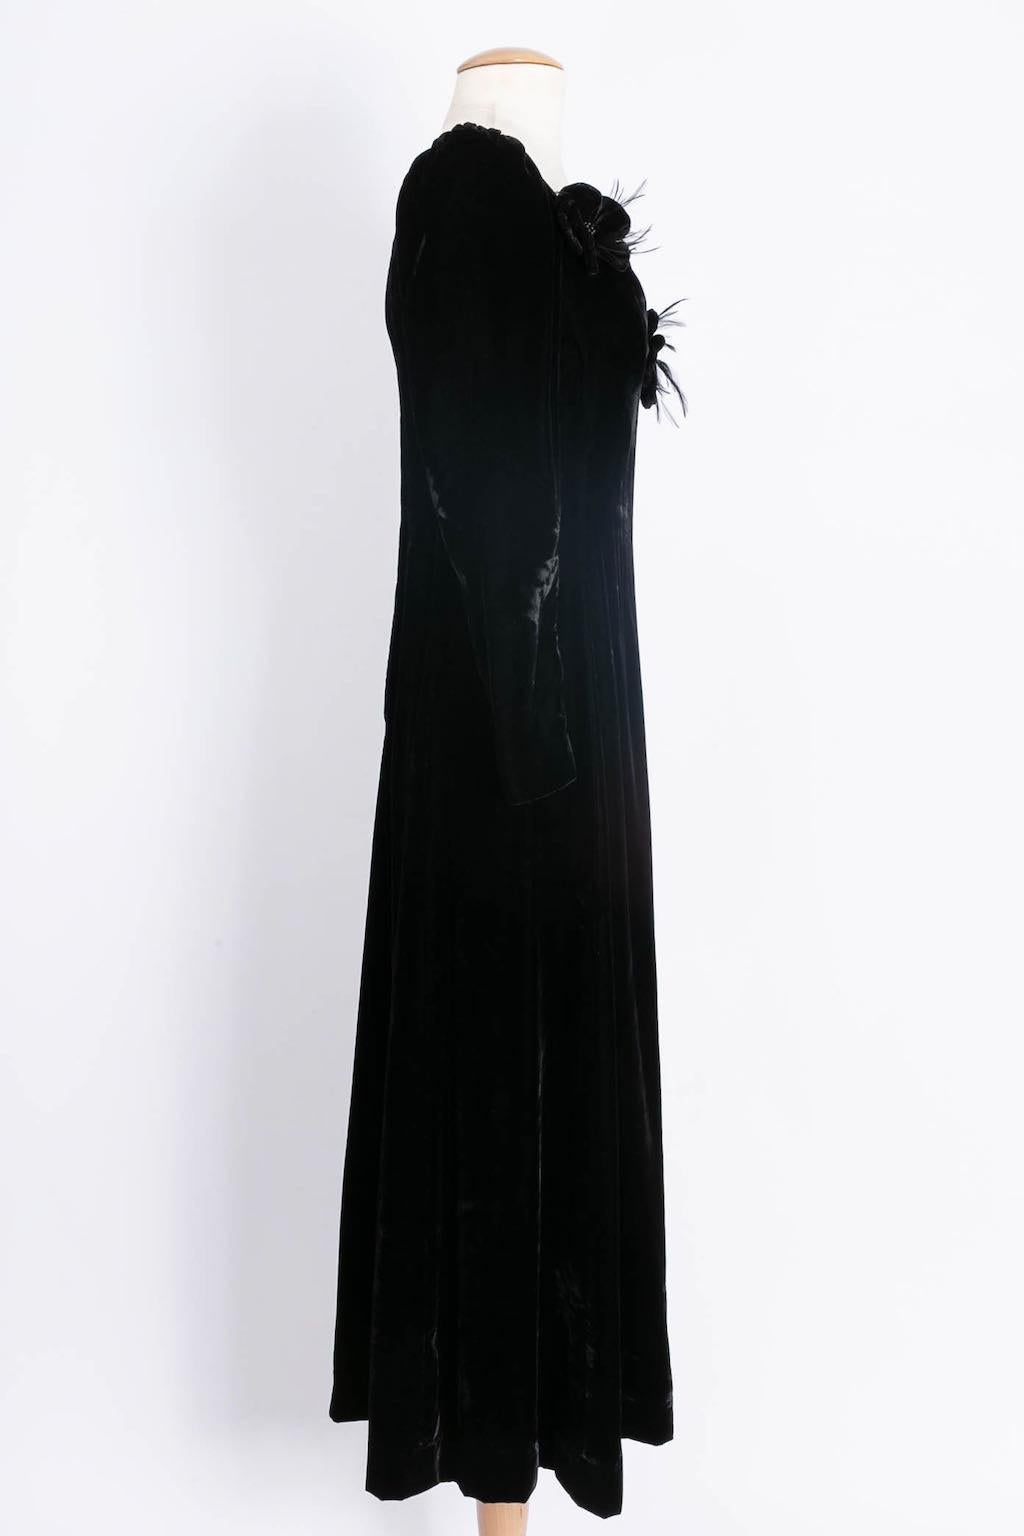 Women's Yves Saint Laurent Black Velvet Embellished with Flowers Dress